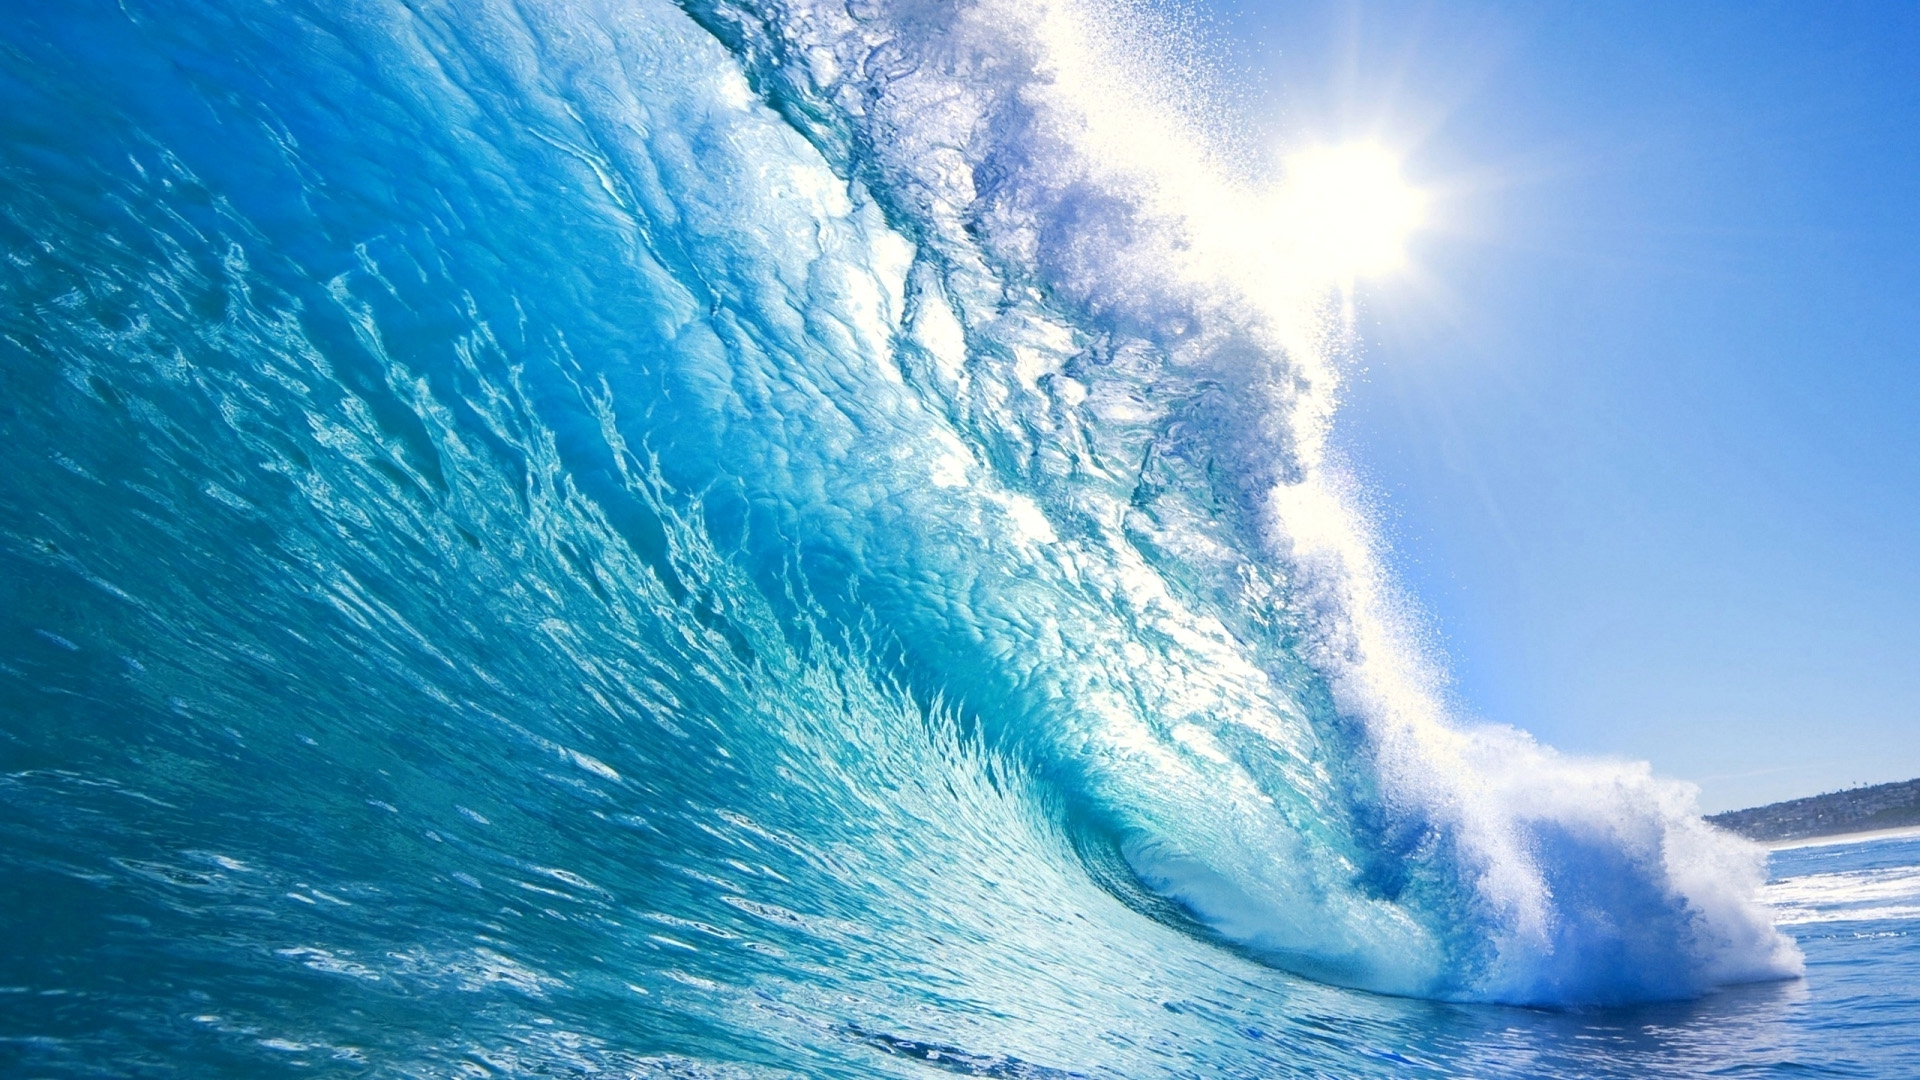 ocean-waves-desktop-background-wallpaper-hd - wallpaper.wiki